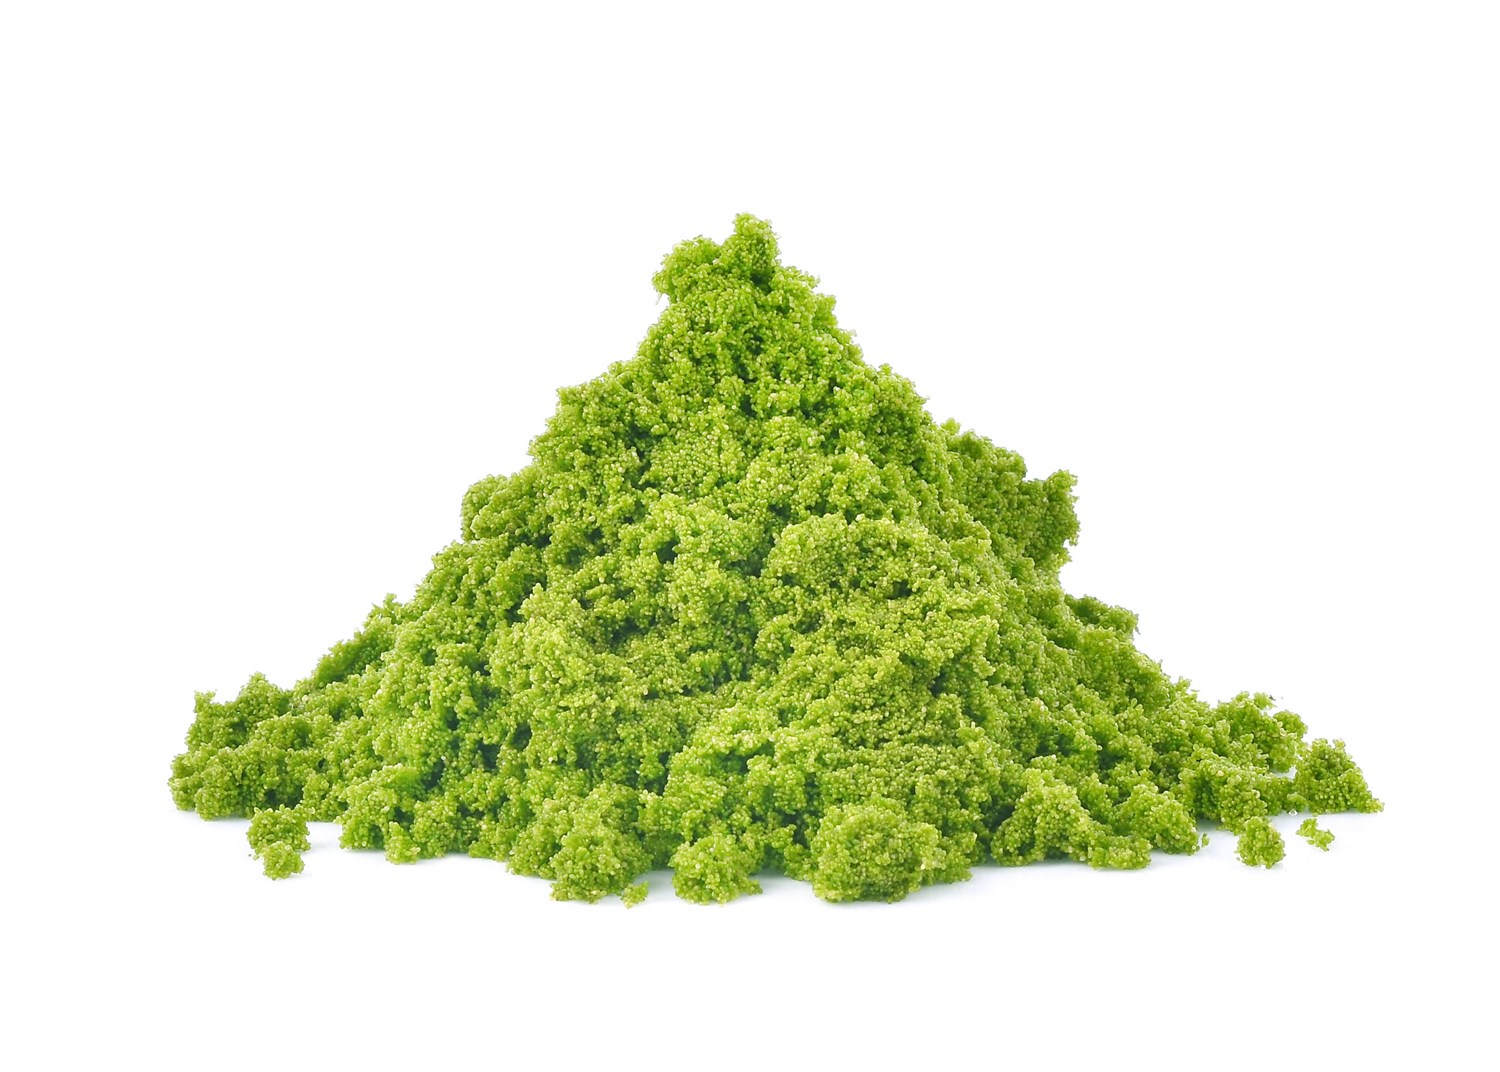 Algae Meal (DHA)